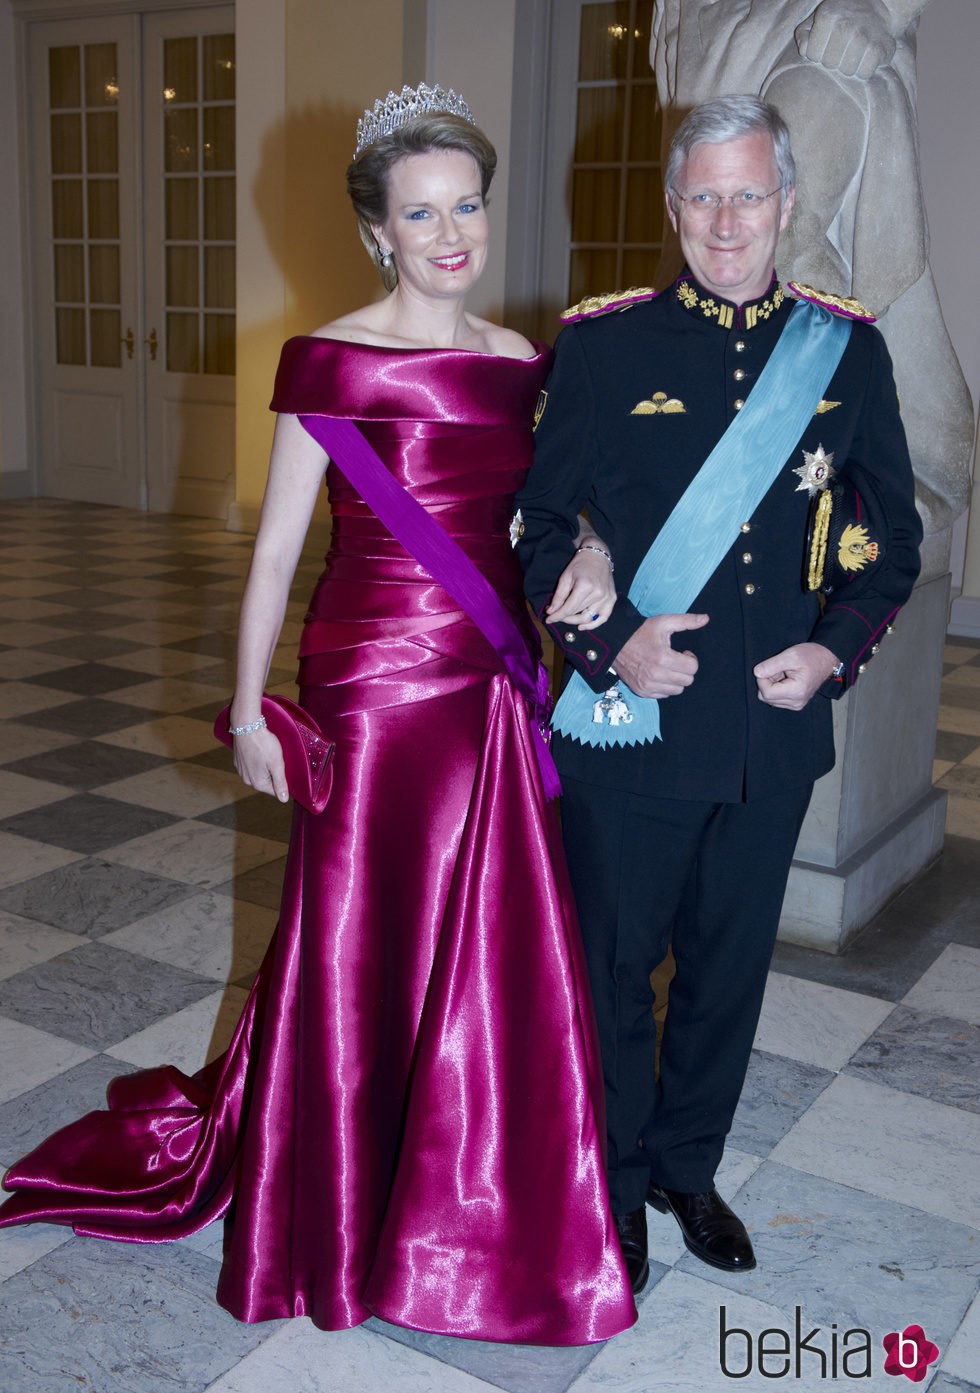 Reina Matilde de Bélgica con un vestido en color fucsia